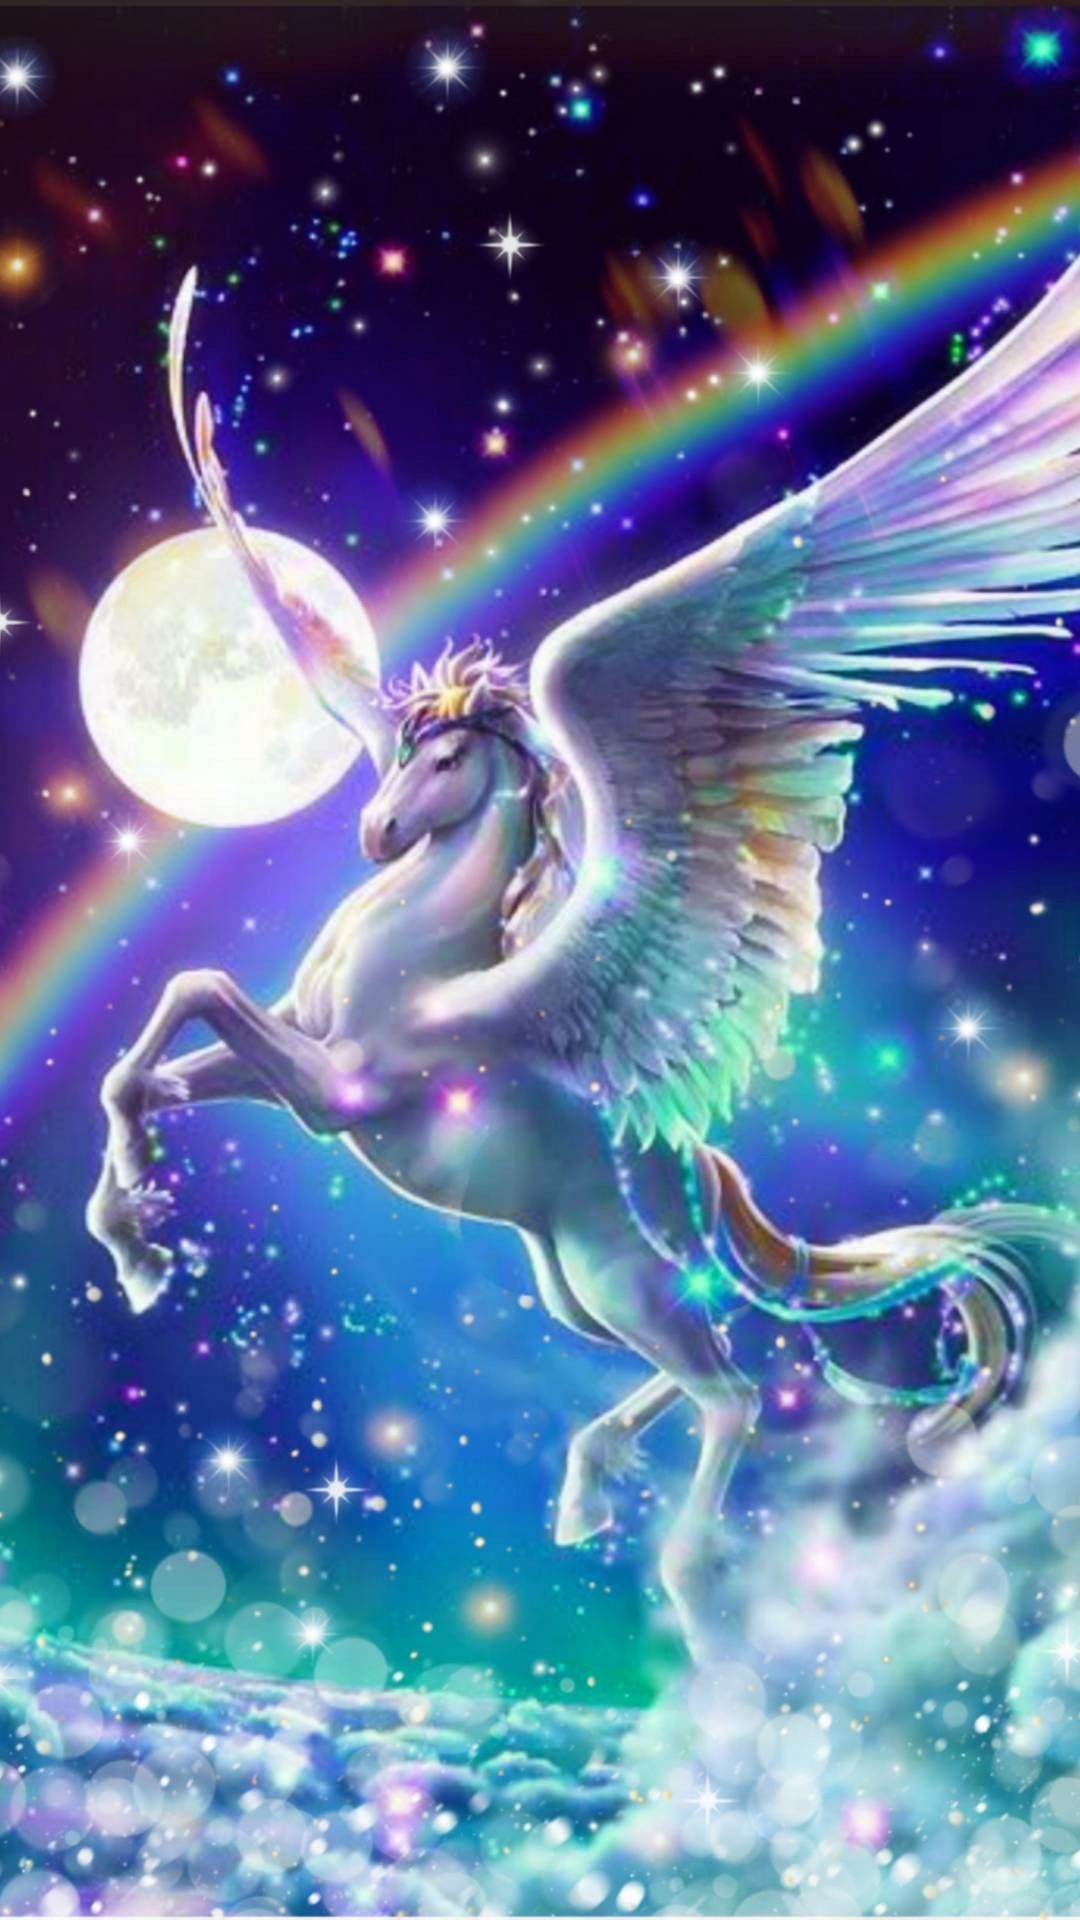 Pegasus with a rainbow. Unicorn wallpaper, Unicorn wallpaper cute, Unicorn picture